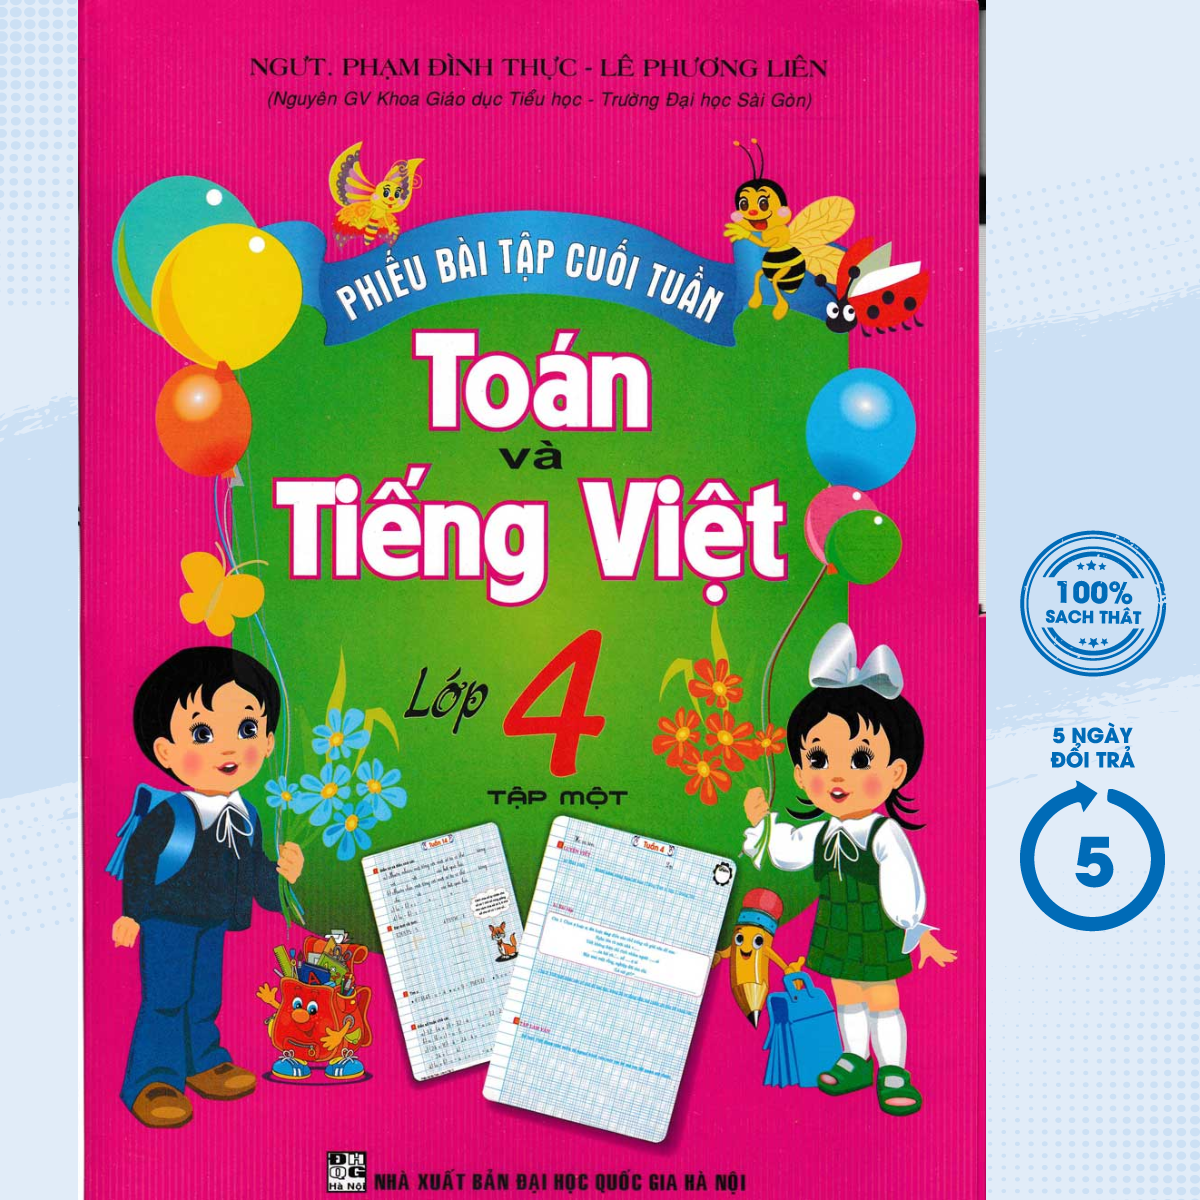 Sách - Phiếu Bài Tập Cuối Tuần Toán - Tiếng Việt Lớp 4 Tập 1 (HA) - Newshop